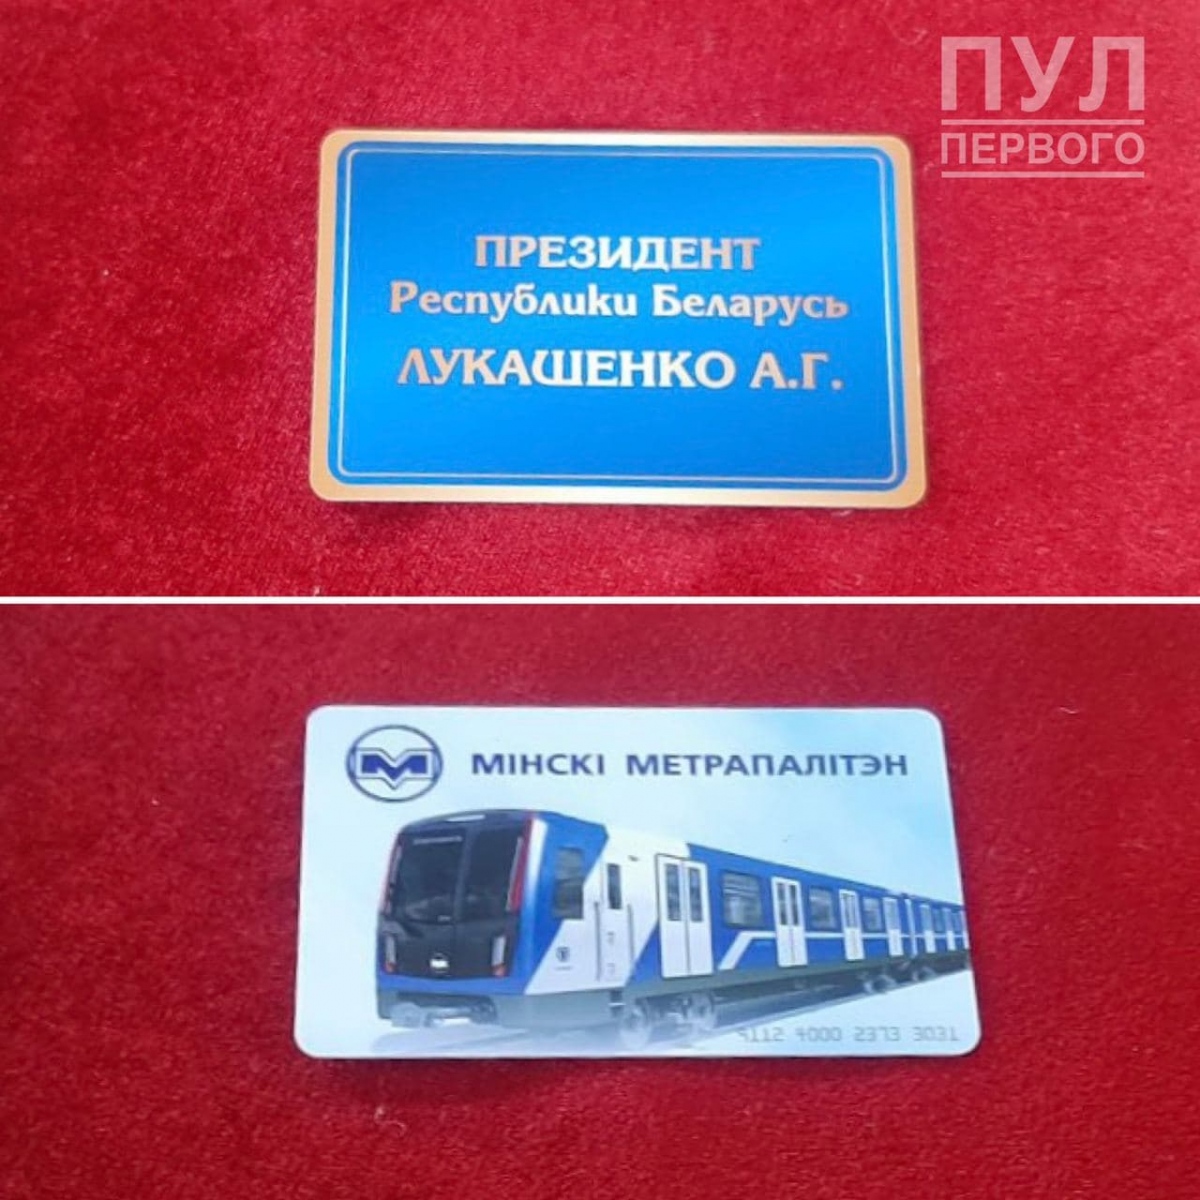 Минск — Метрополитен — Средства оплаты проезда